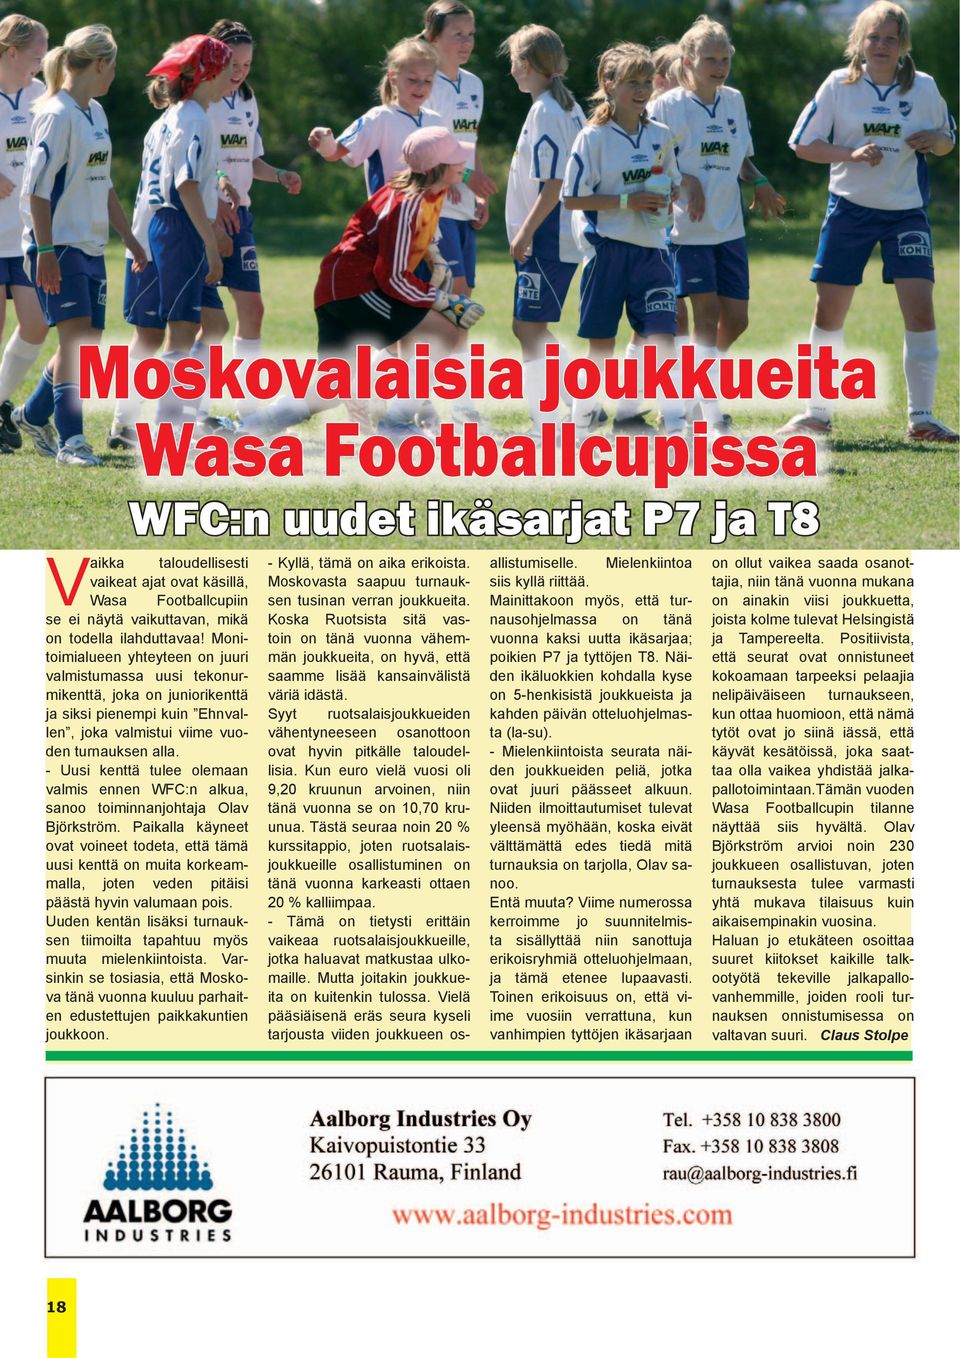 - Uusi kenttä tulee olemaan valmis ennen WFC:n alkua, sanoo toiminnanjohtaja Olav Björkström.